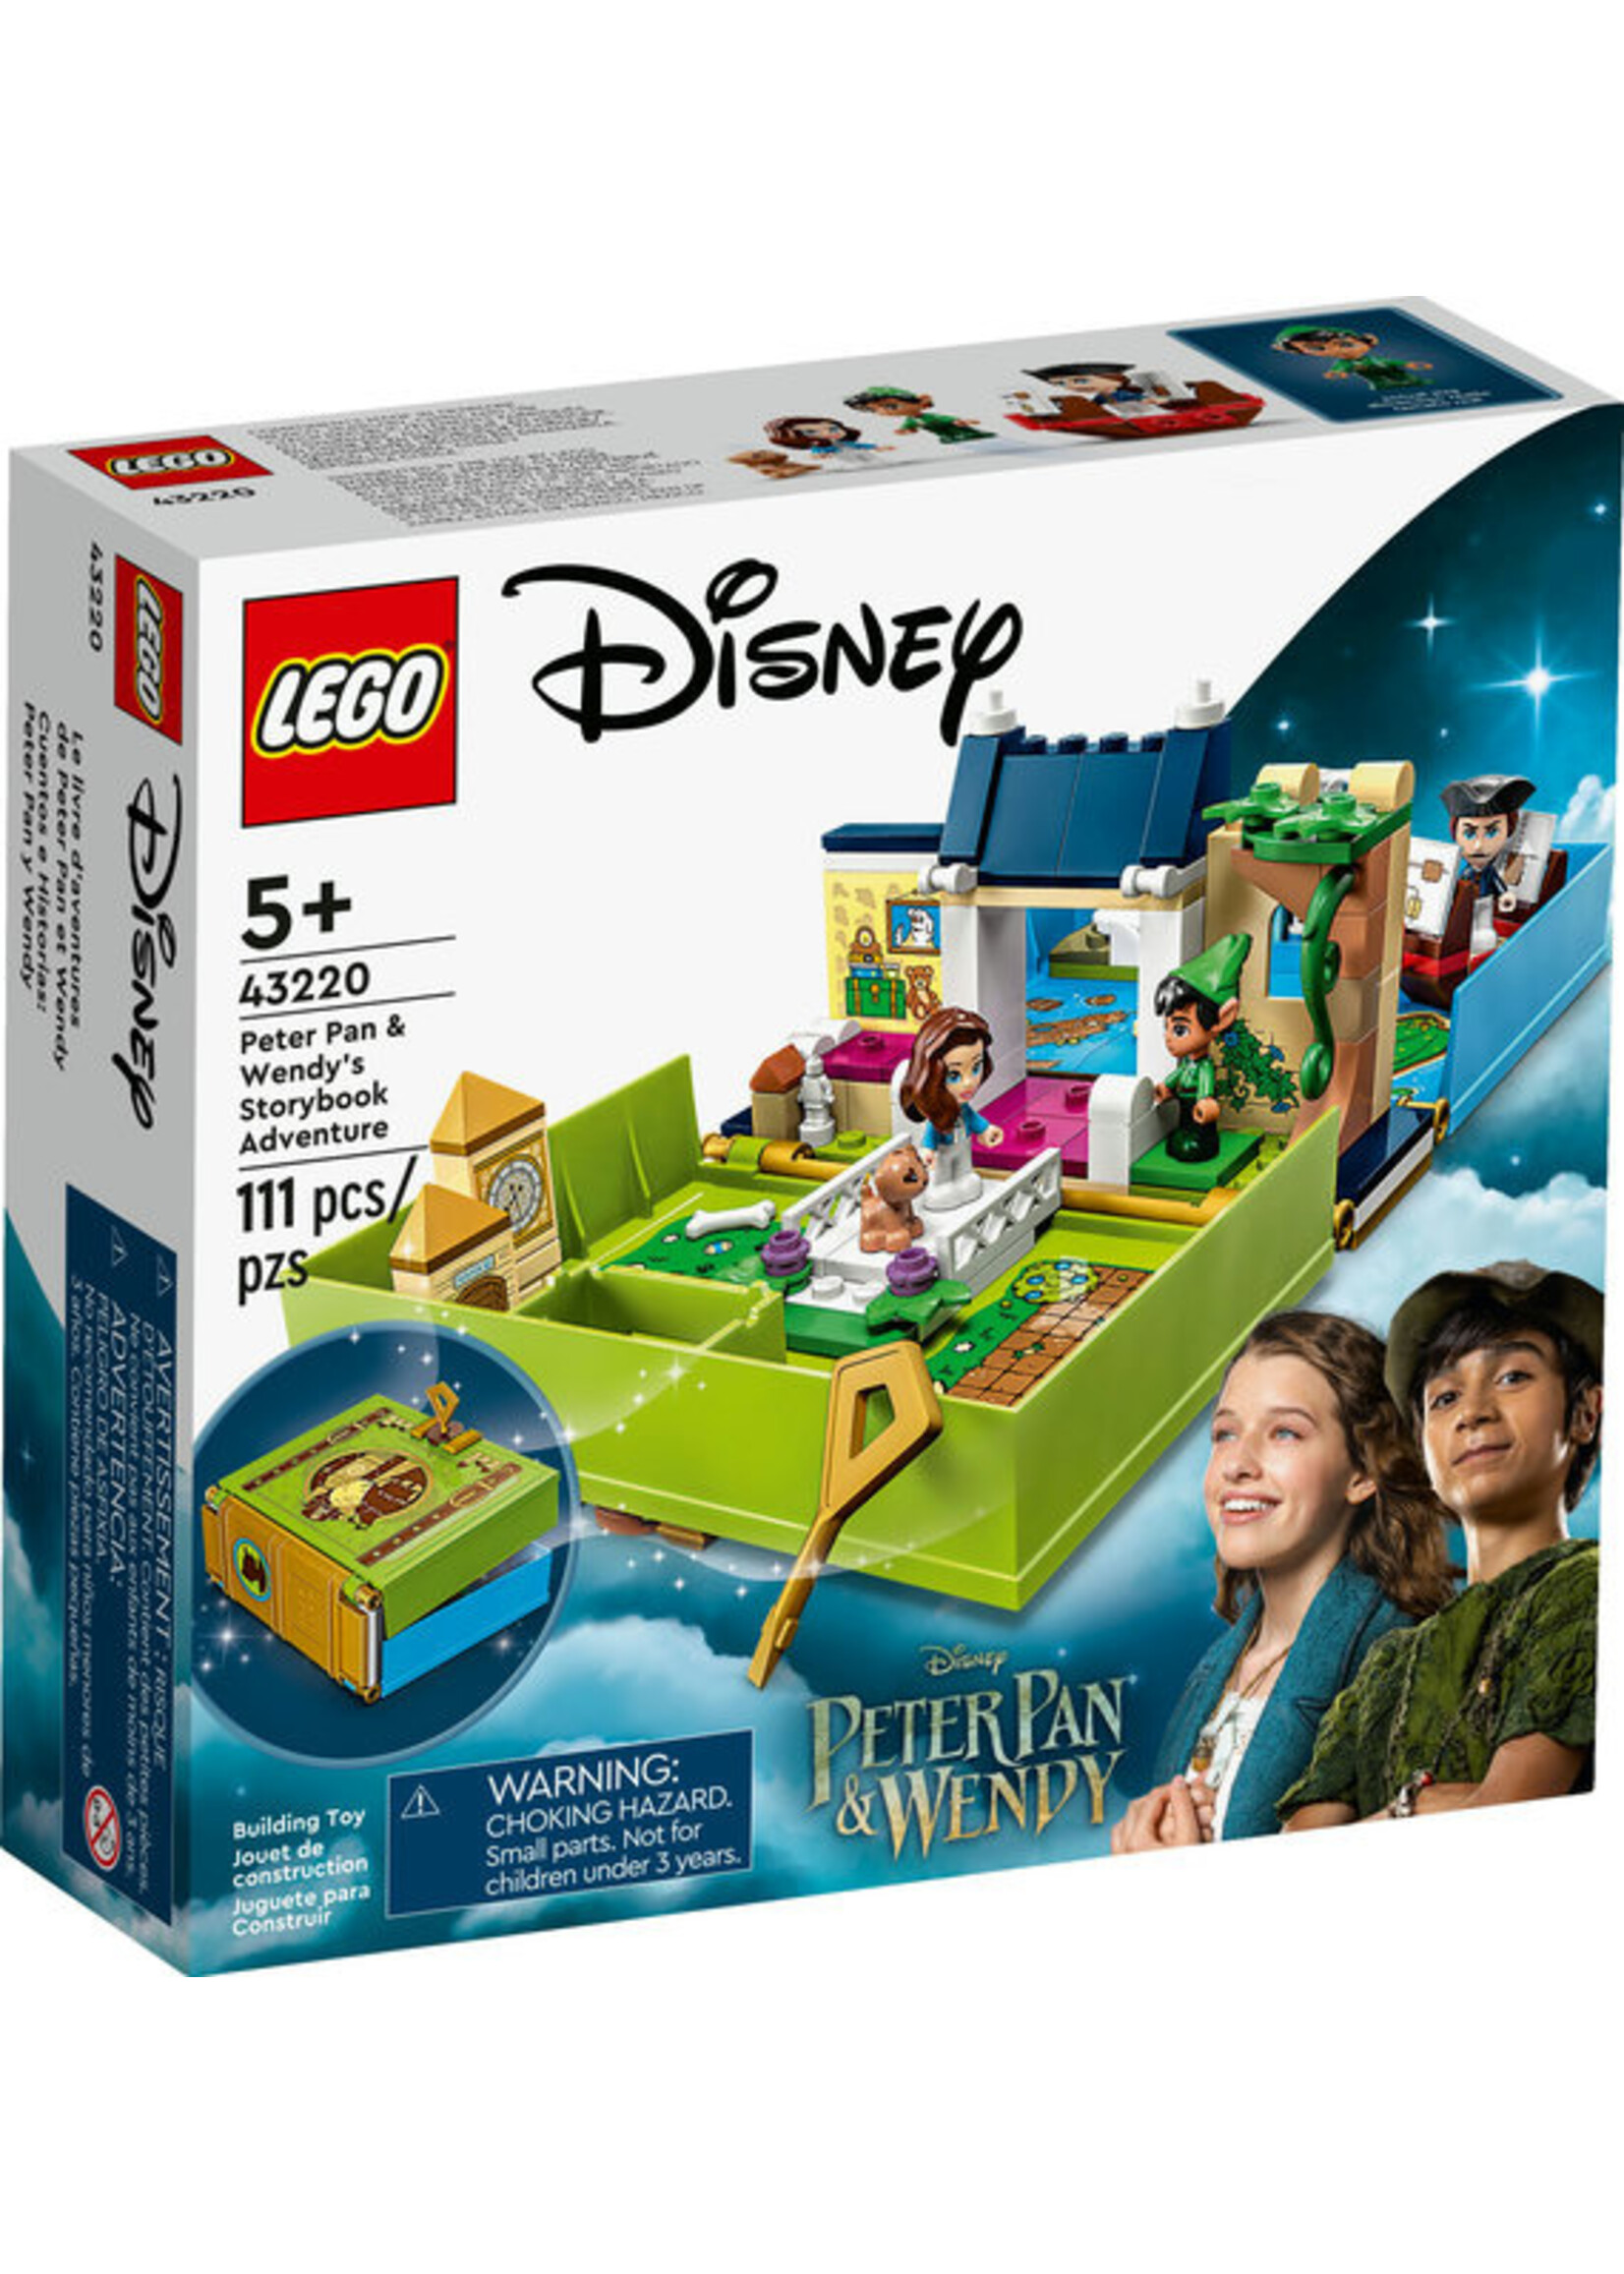 LEGO 43220 - Peter Pan & Wendy's Storybook Adventure